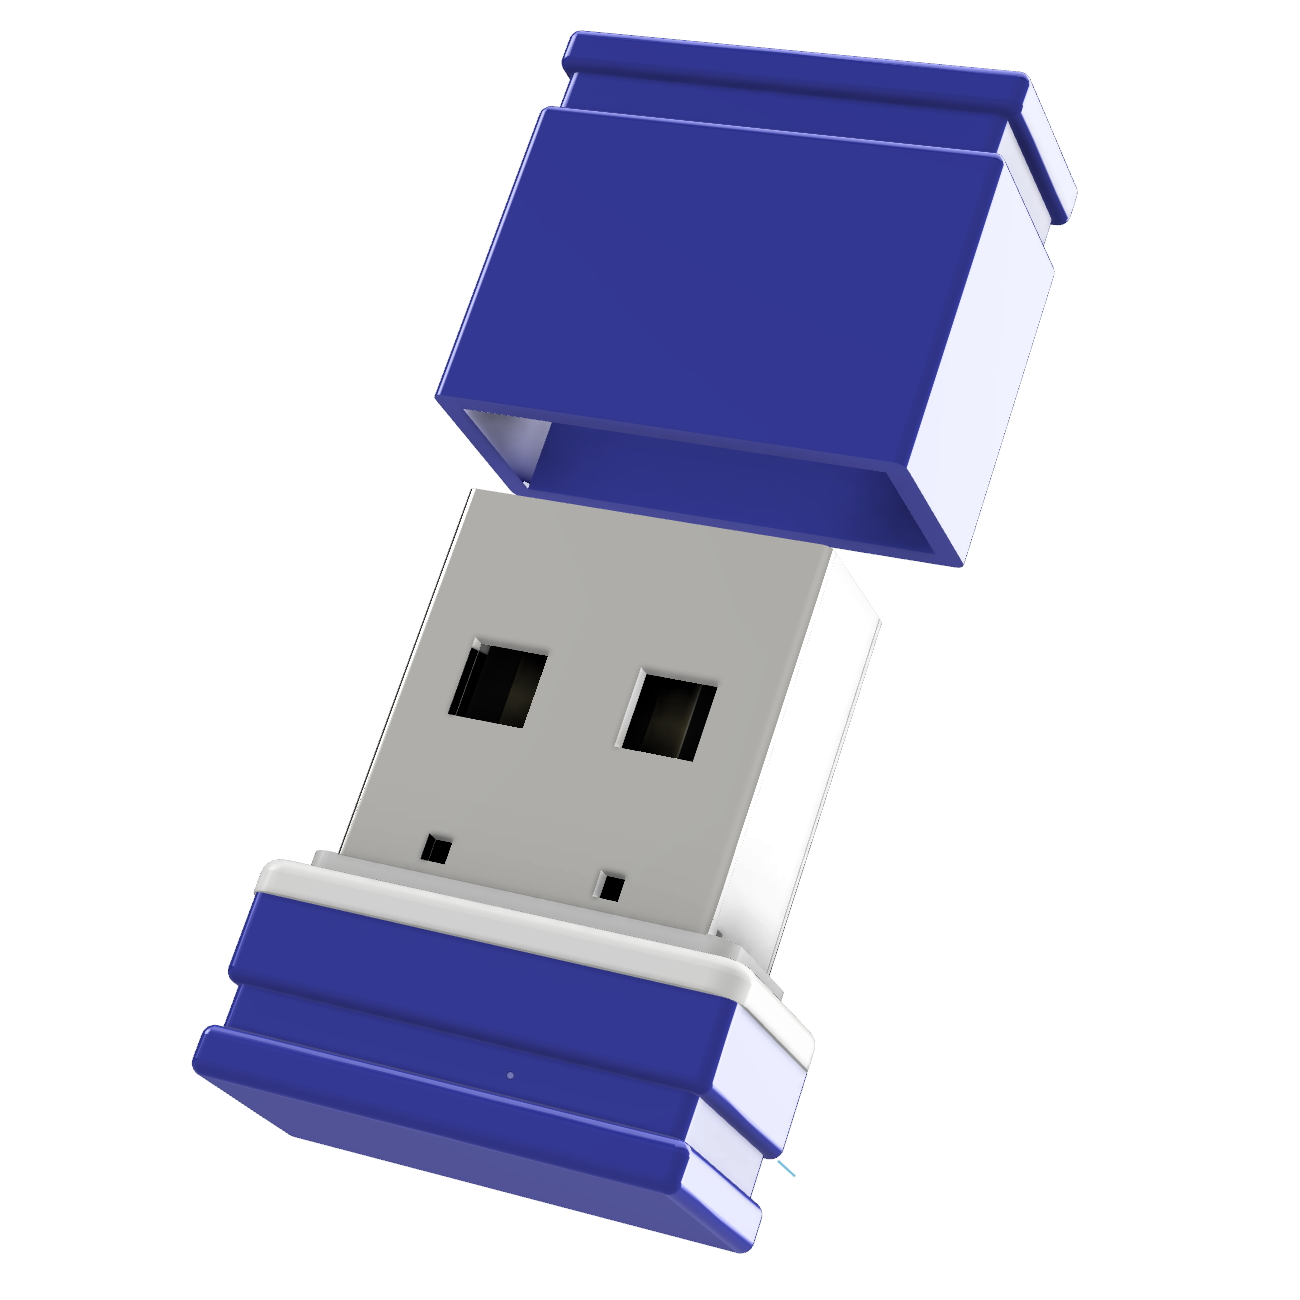 USB GERMANY ®ULTRA Mini P1 USB-Stick (Blau/Weiss, GB) 64